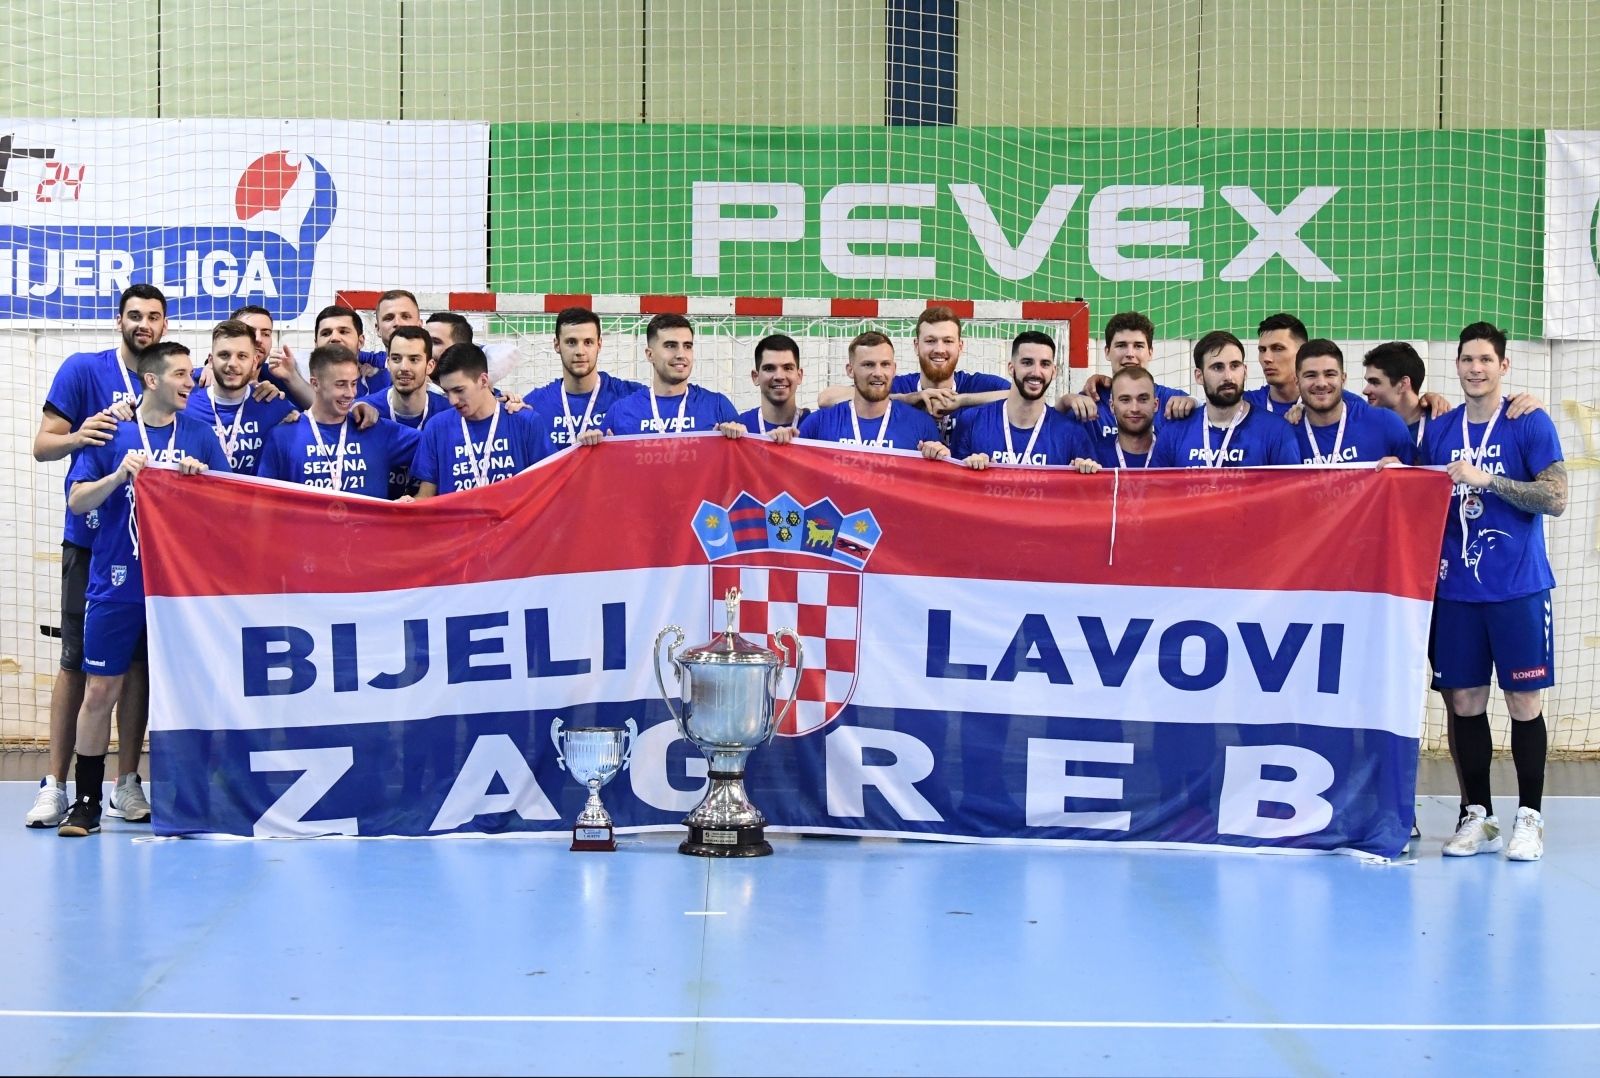 16.06.2021., Zagreb - Rukometna premijer liga, 10. kolo, PPD Zagreb - RK Nexe Nasice. Photo: Marko Lukunic/PIXSELL